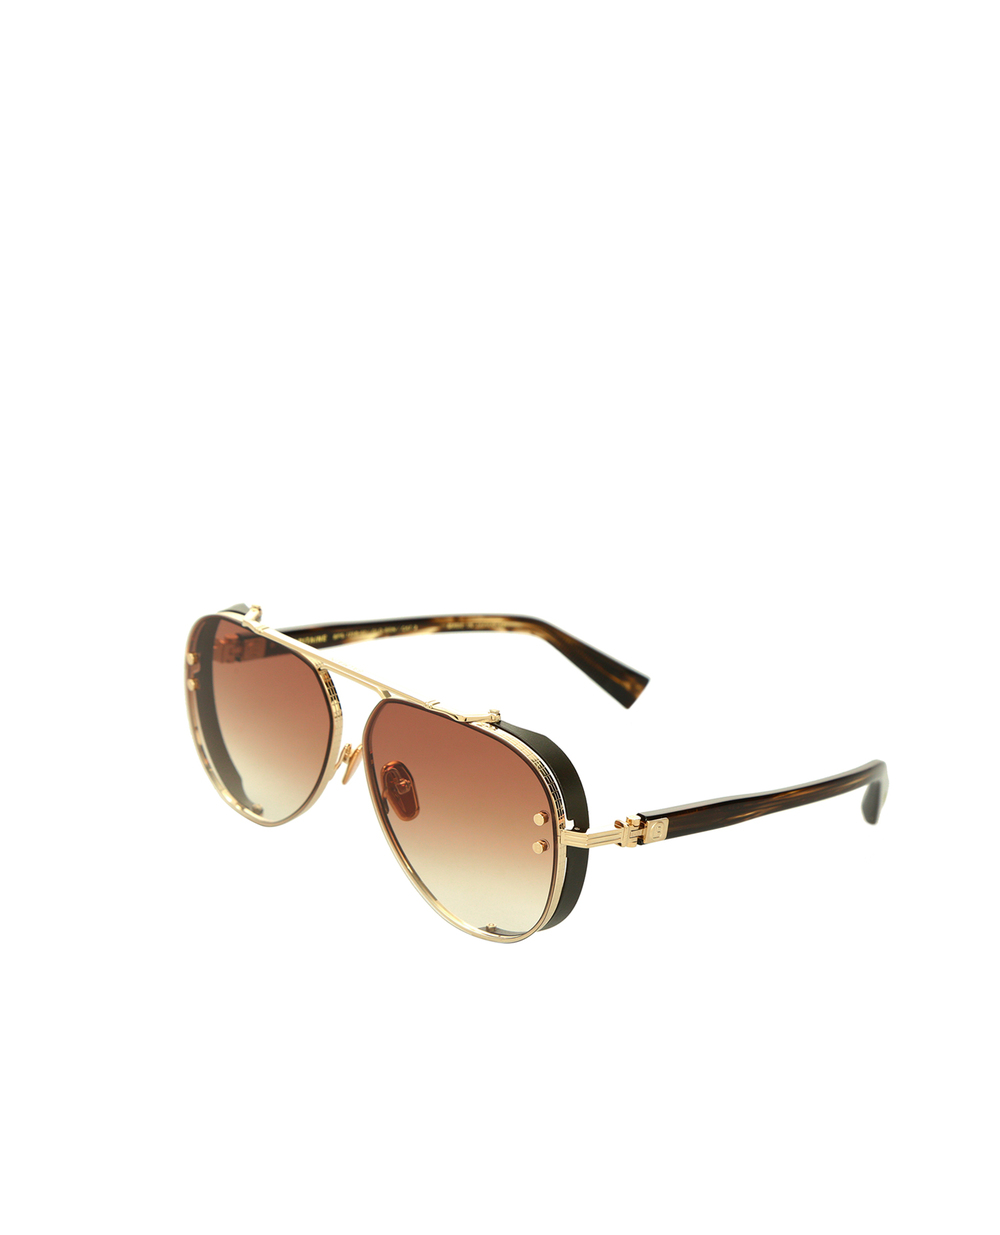 Солнцезащитные очки Balmain BPS-125B-62, коричневый цвет • Купить в интернет-магазине Kameron